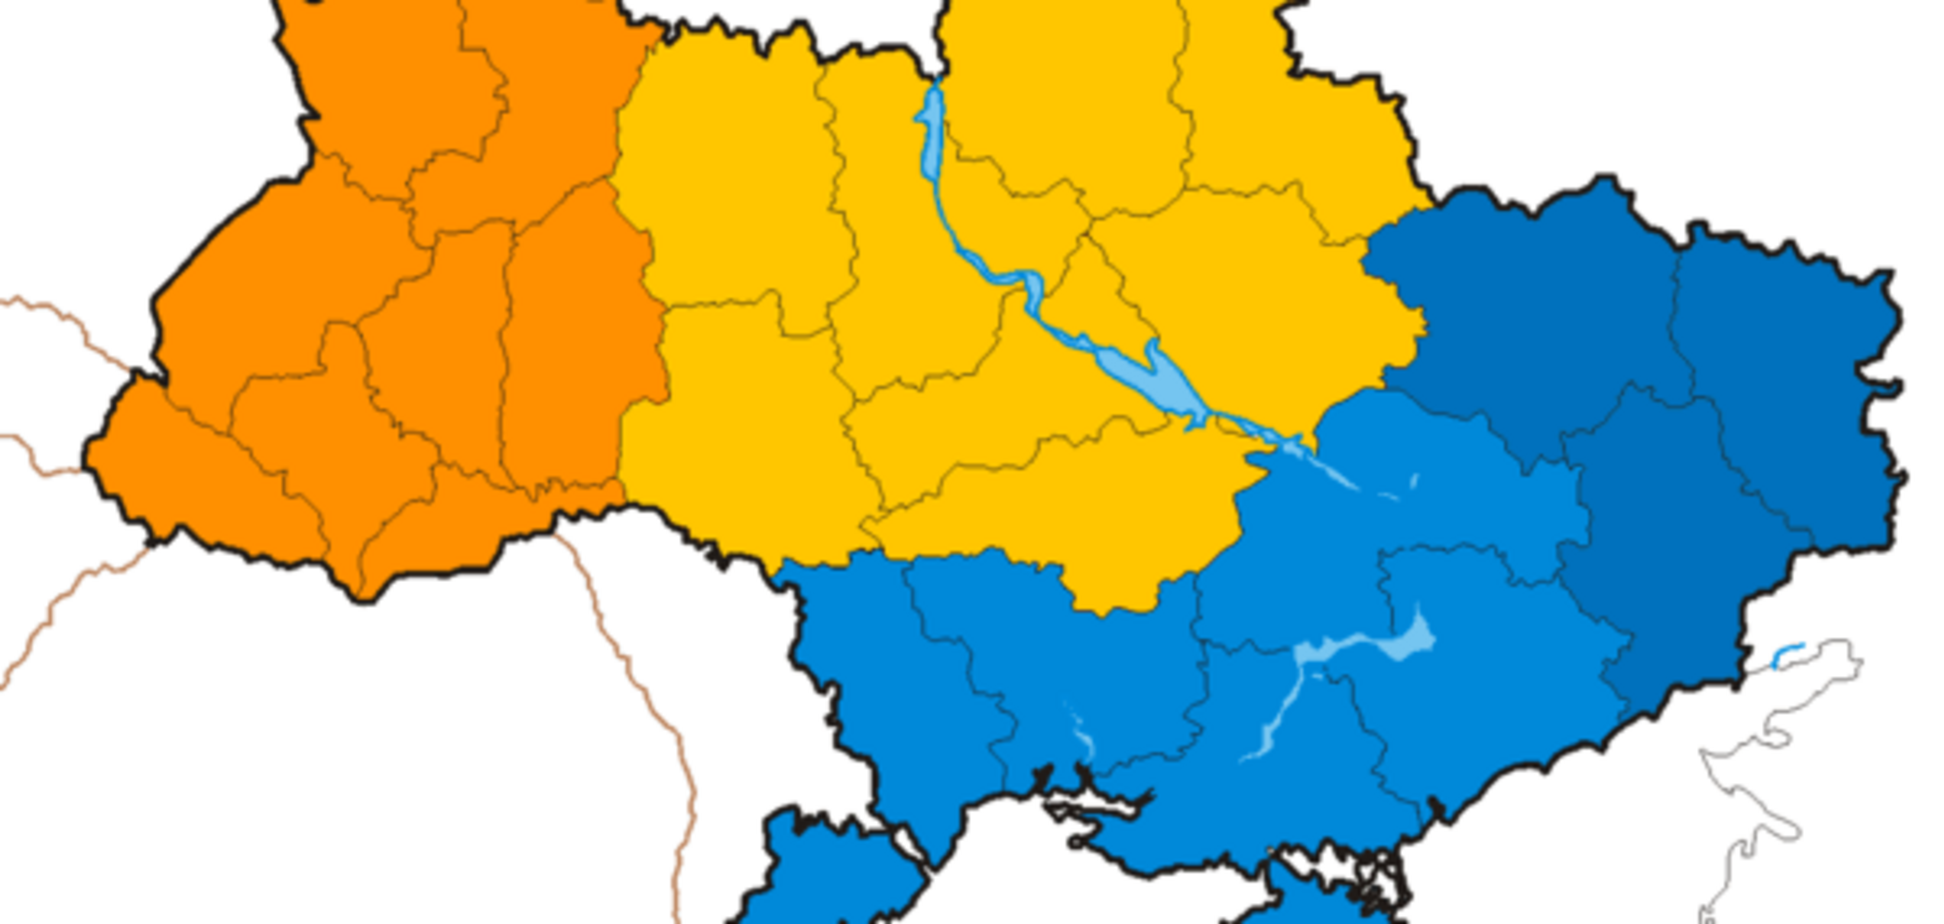 Украина продолжит уменьшаться территориально, пока не изменится внутренне